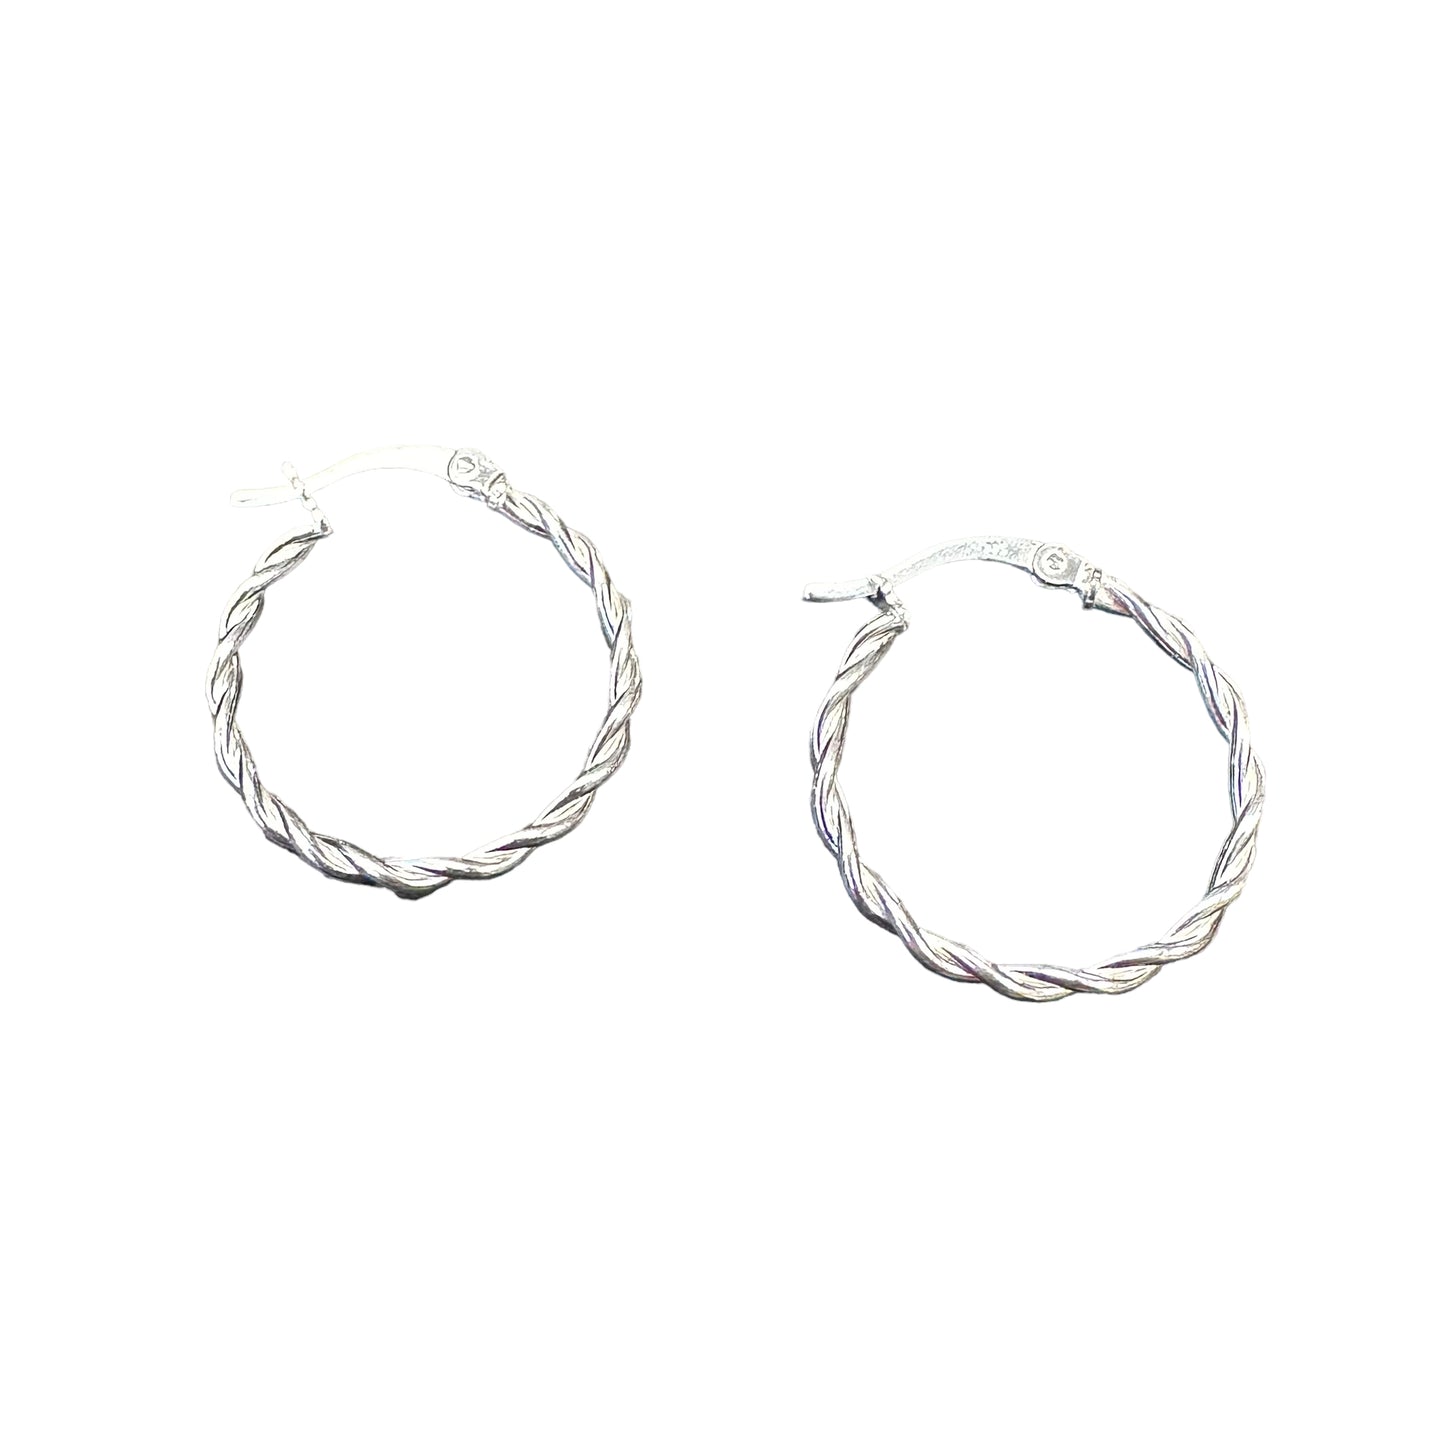 Braided Rope Hinged Hoop Earrings Sterling Silver